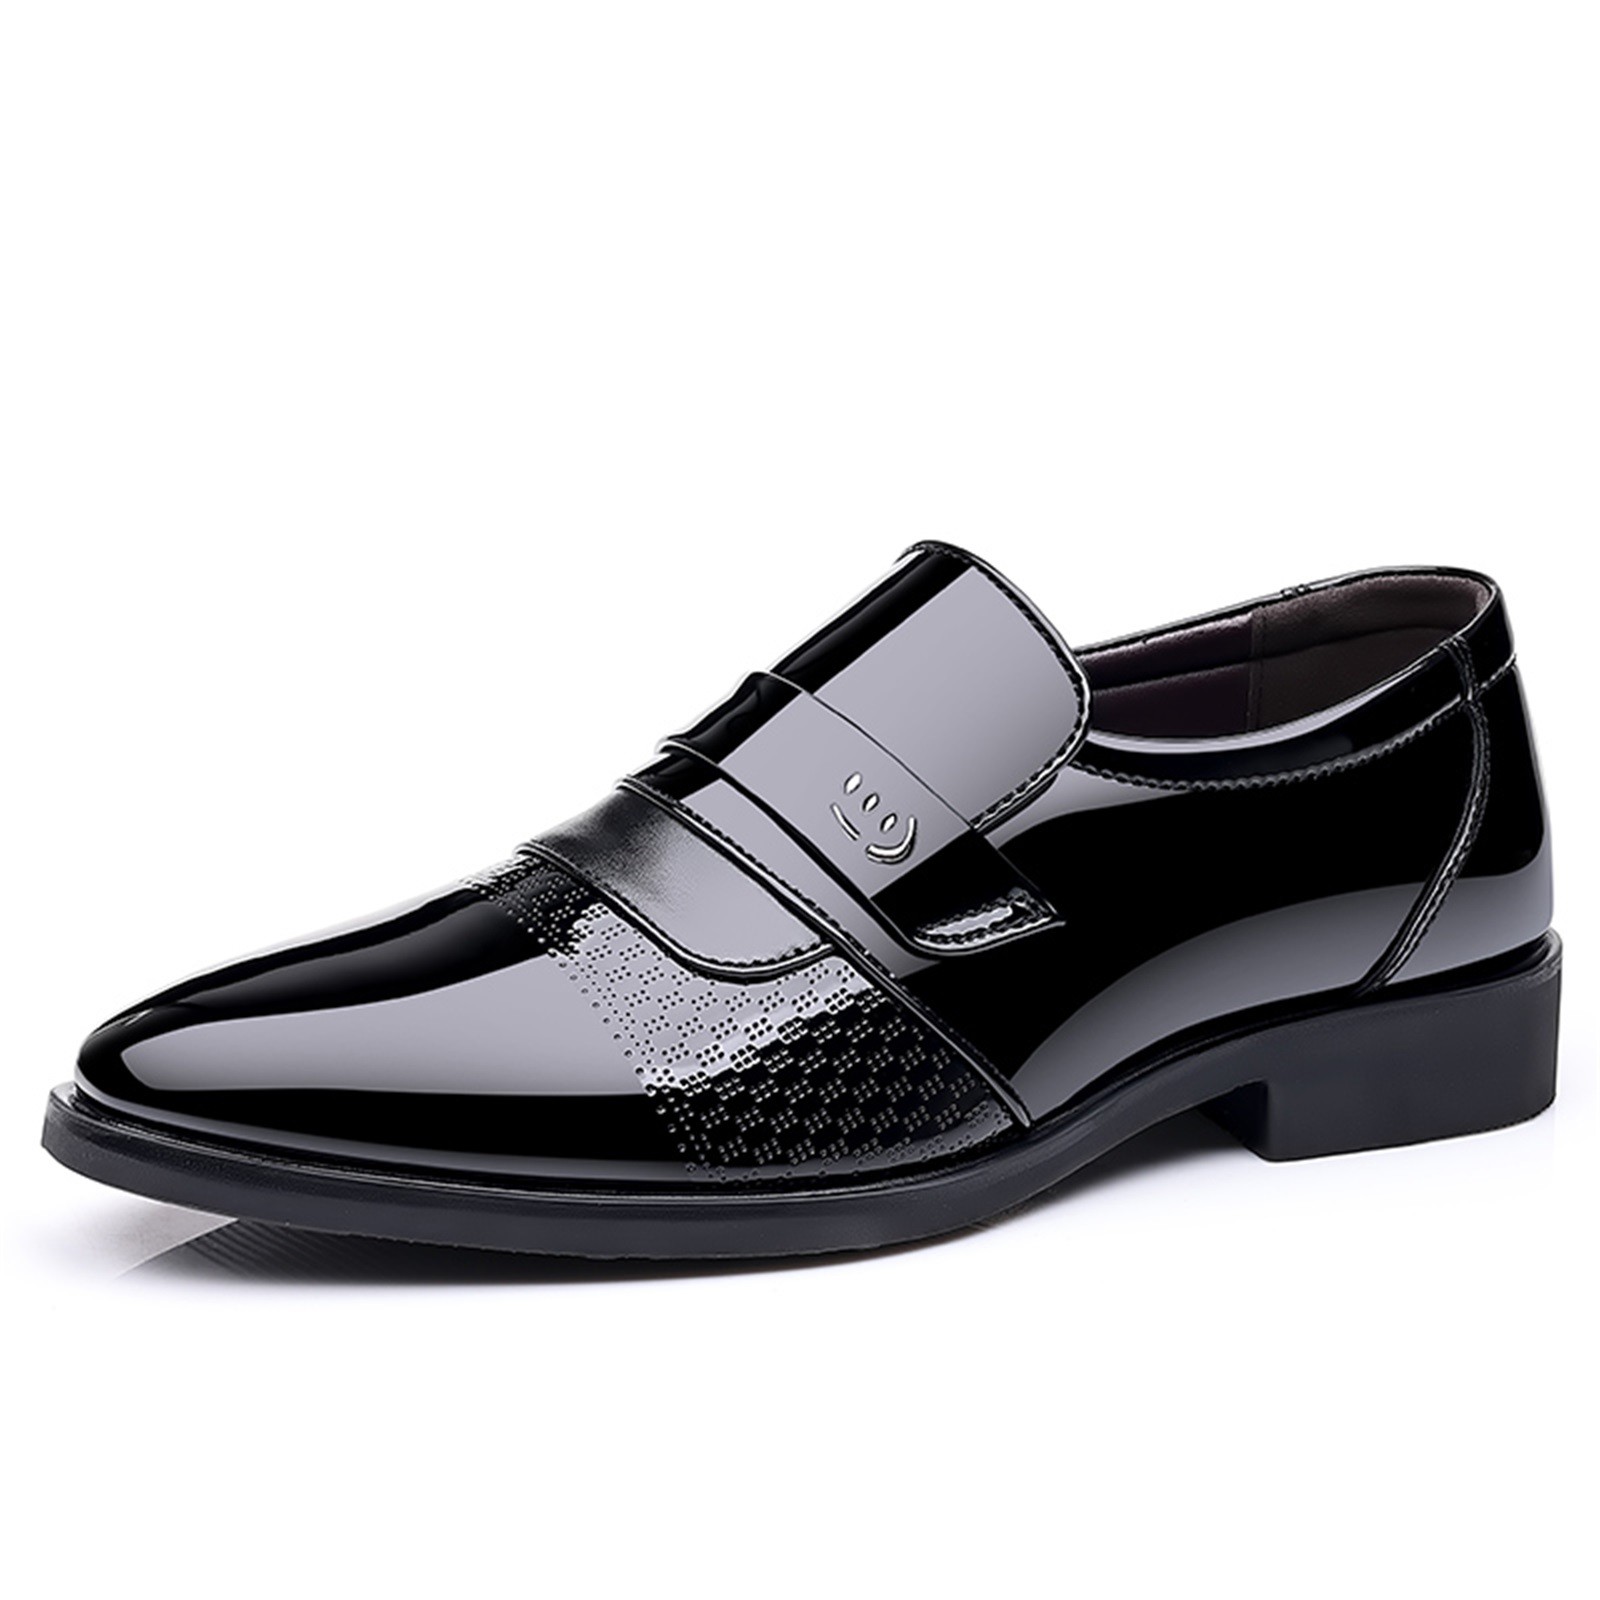 dress shoes oxford black